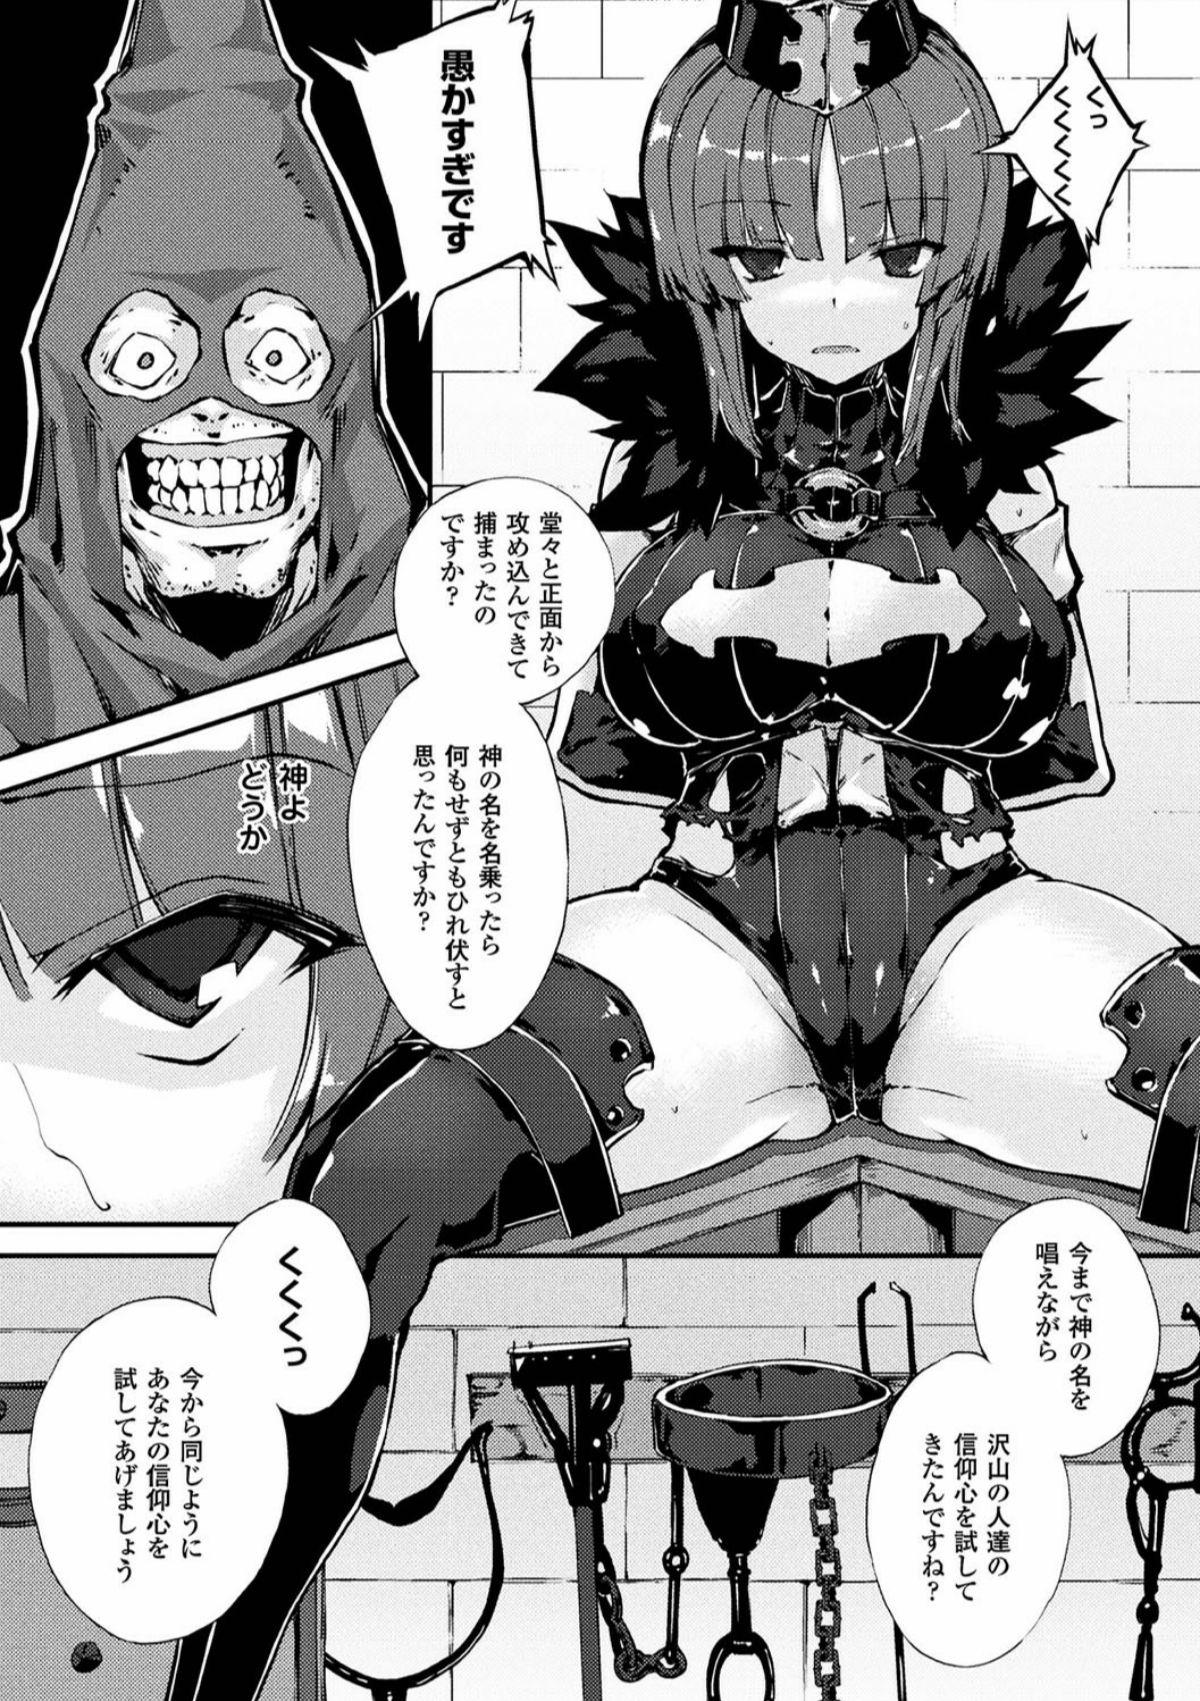 Pija 2D Comic Magazine Ingu Zeme Choukyou de Kyousei Hatsujou! Vol. 2 Nasty Porn - Page 6